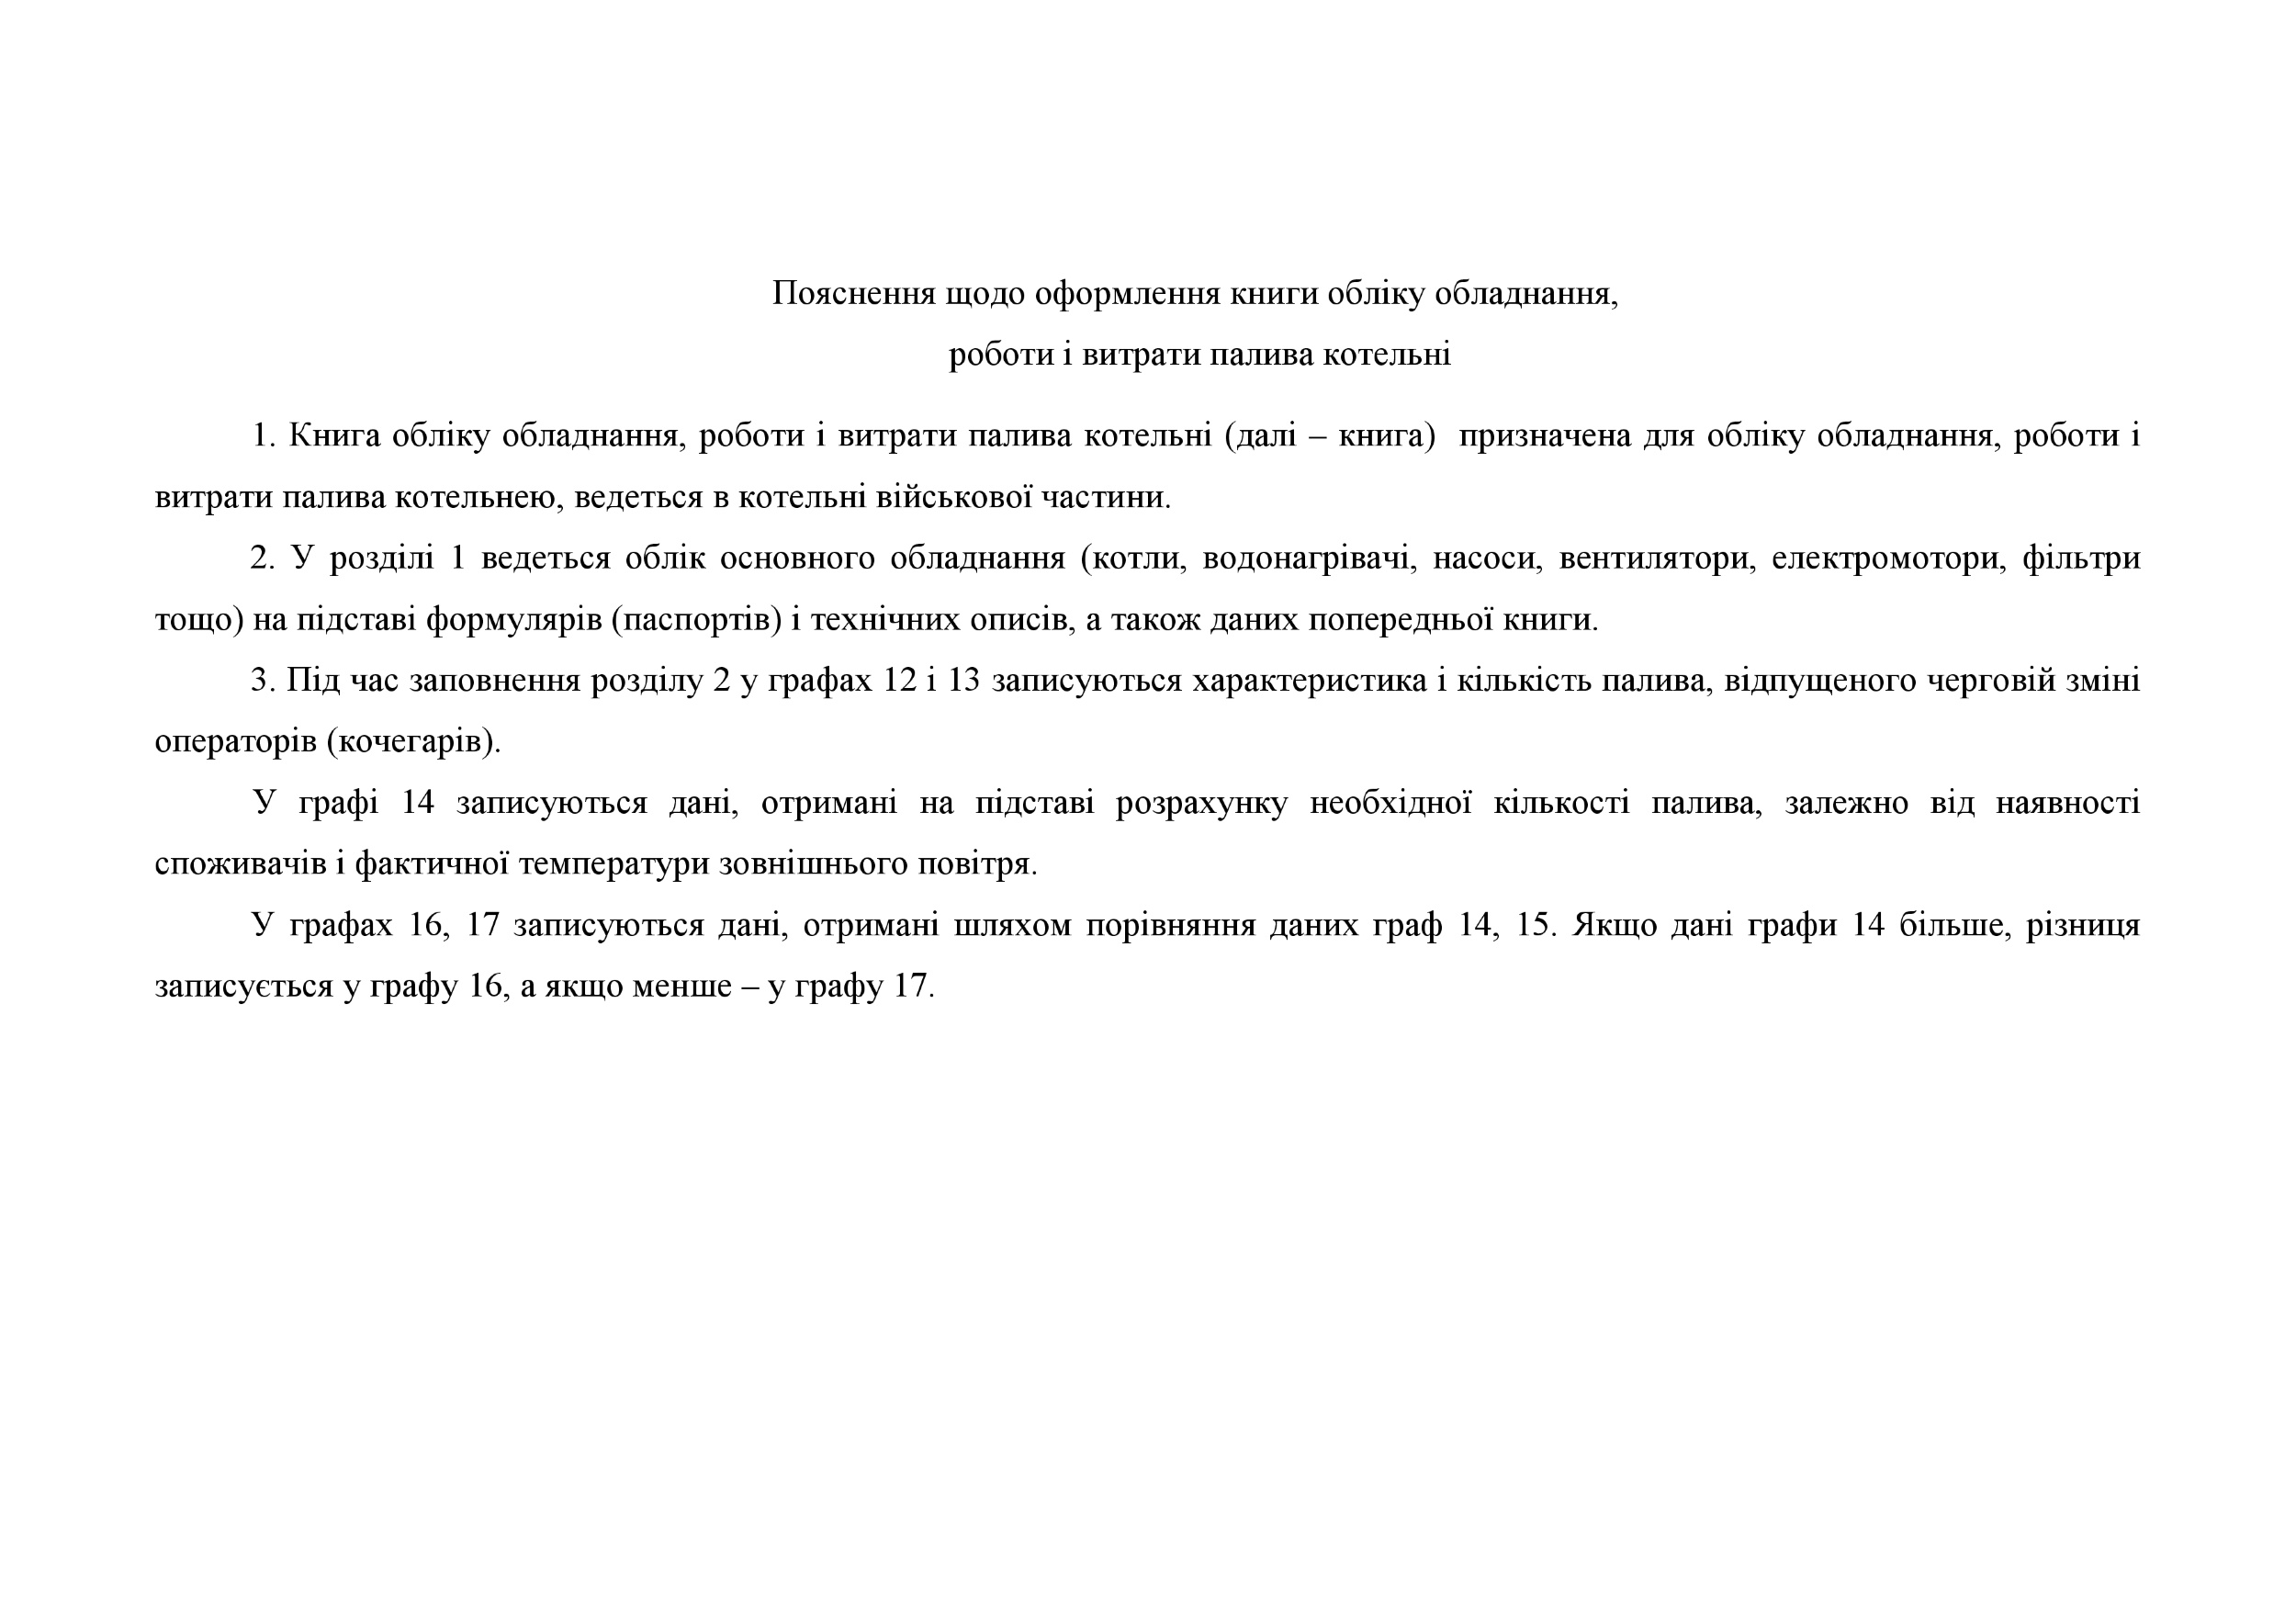 Книга обліку обладнання роботи і витрати палива котельні, додаток 128. Автор — Міністерство оборони України. 